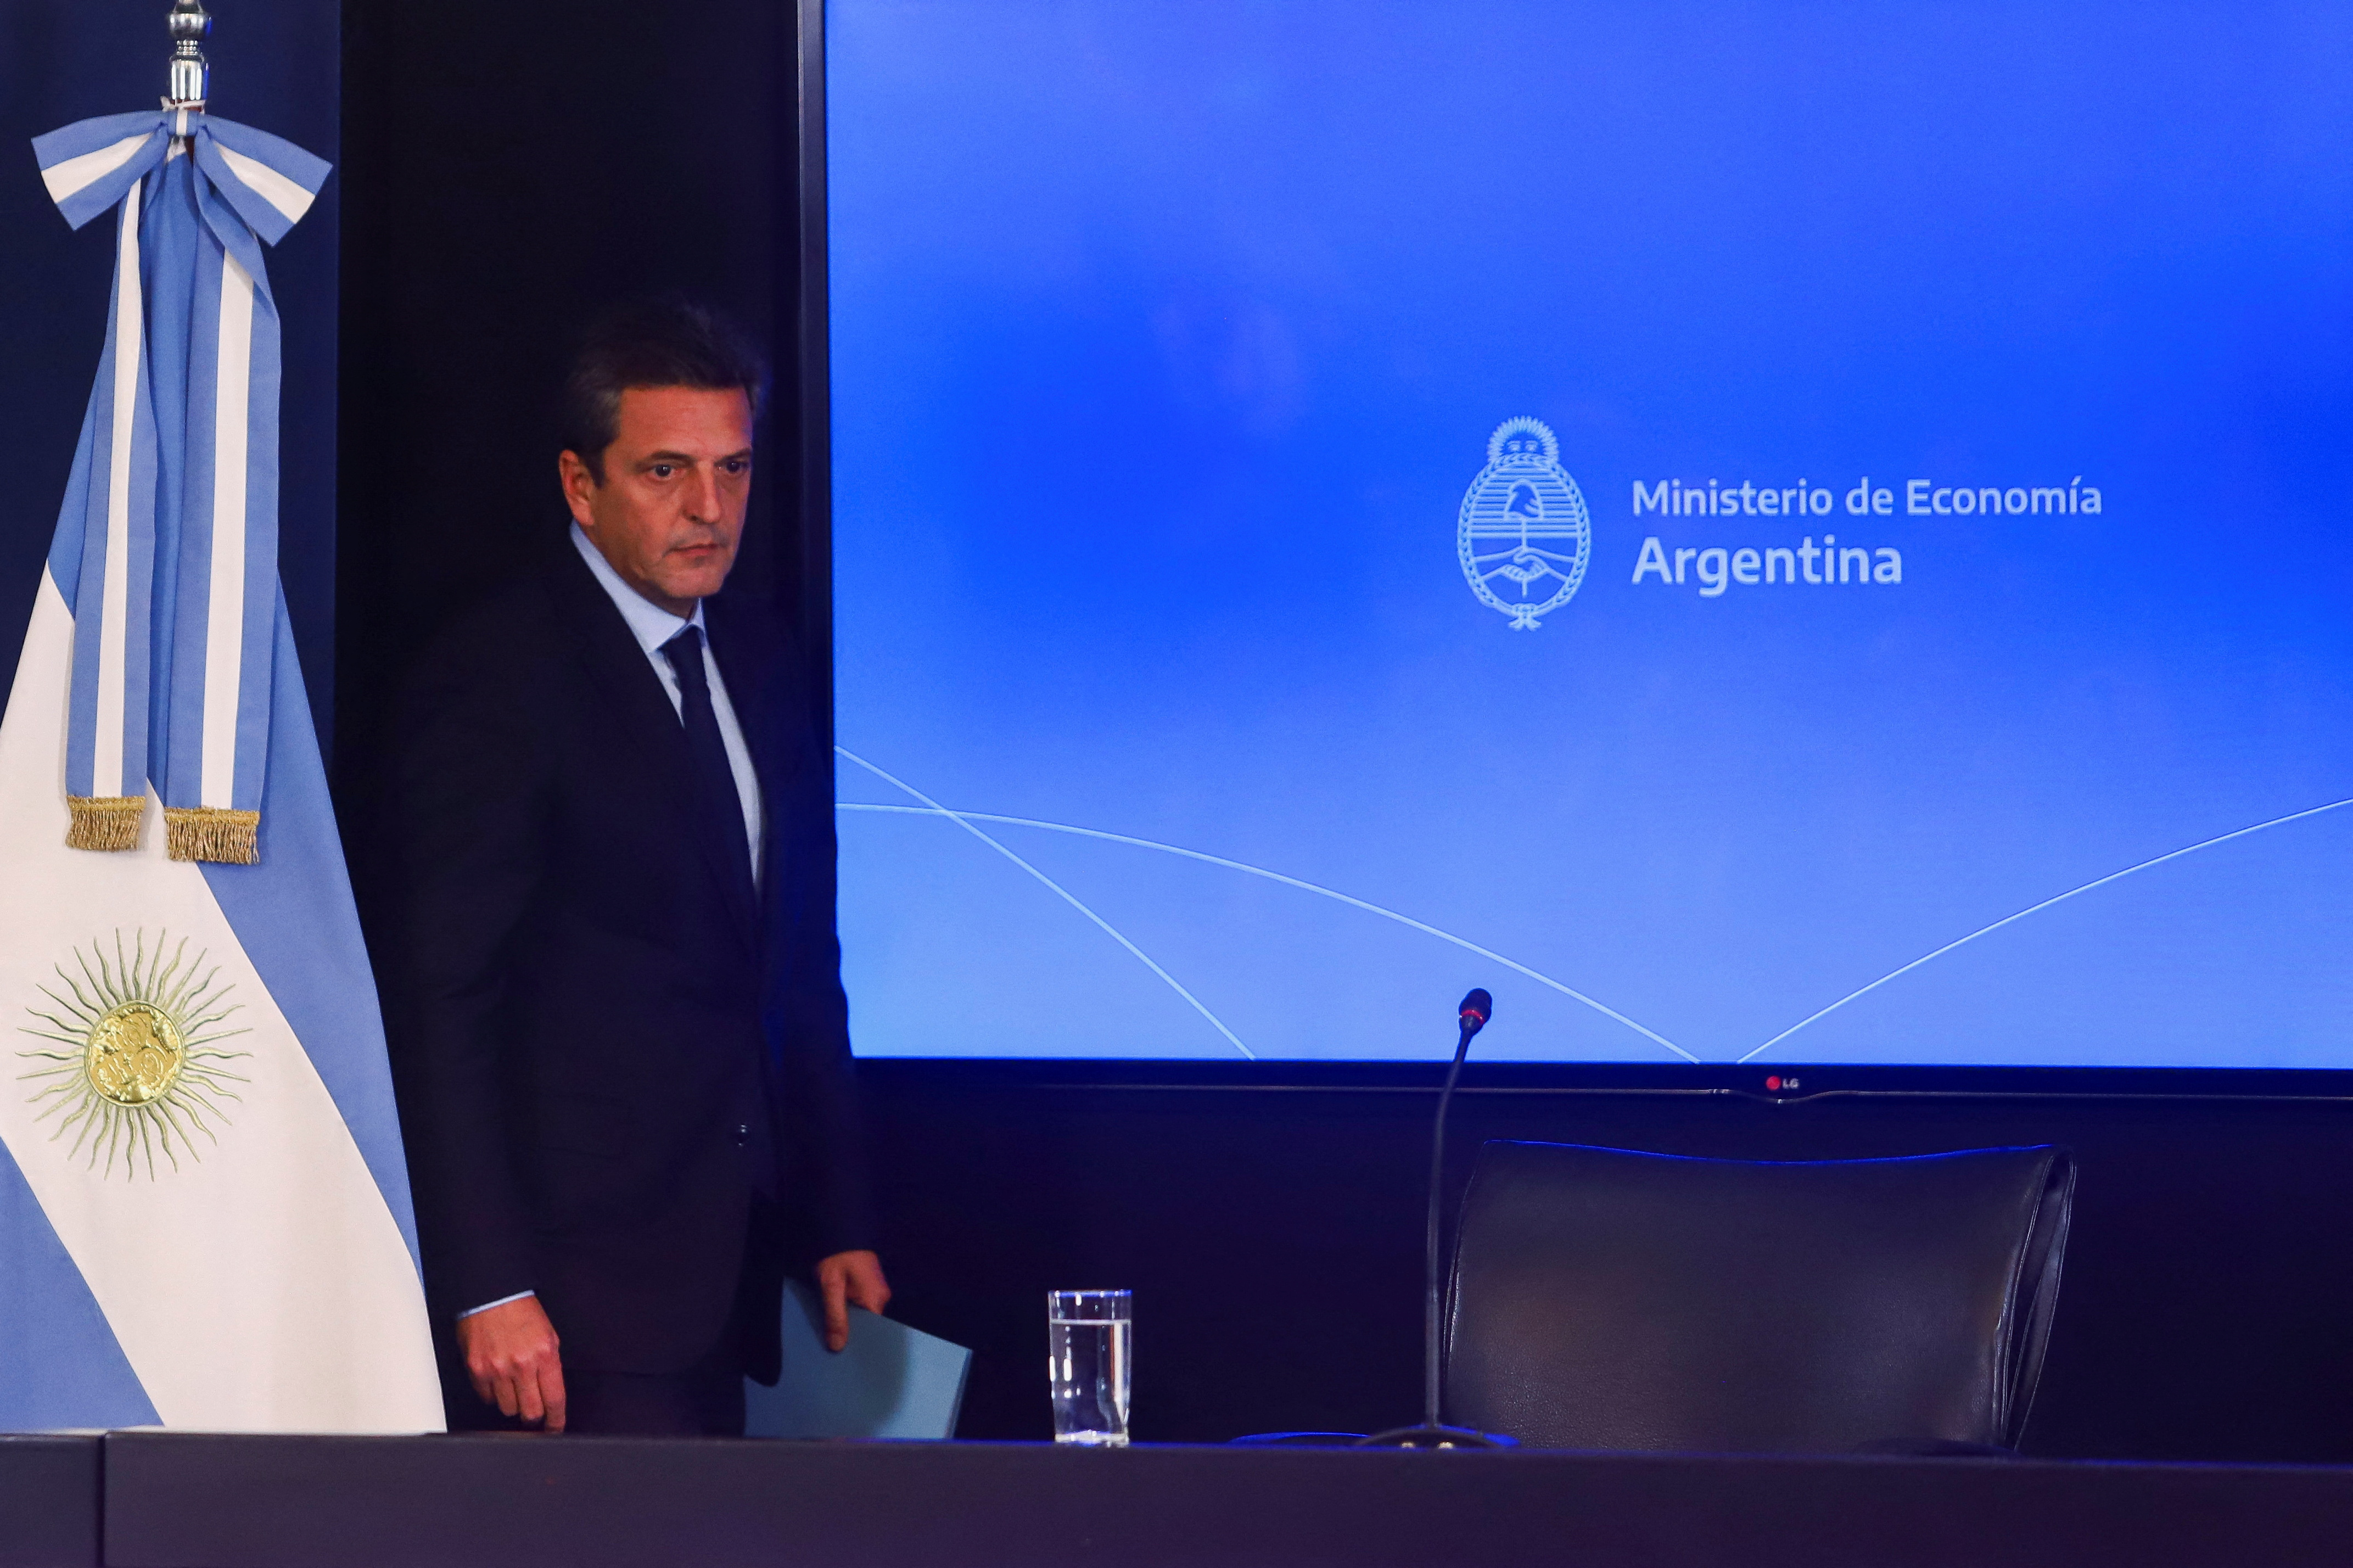 Sergio Massa ingresó al microcine del Palacio de Hacienda y realizó los primeros anuncios como ministro de Economía